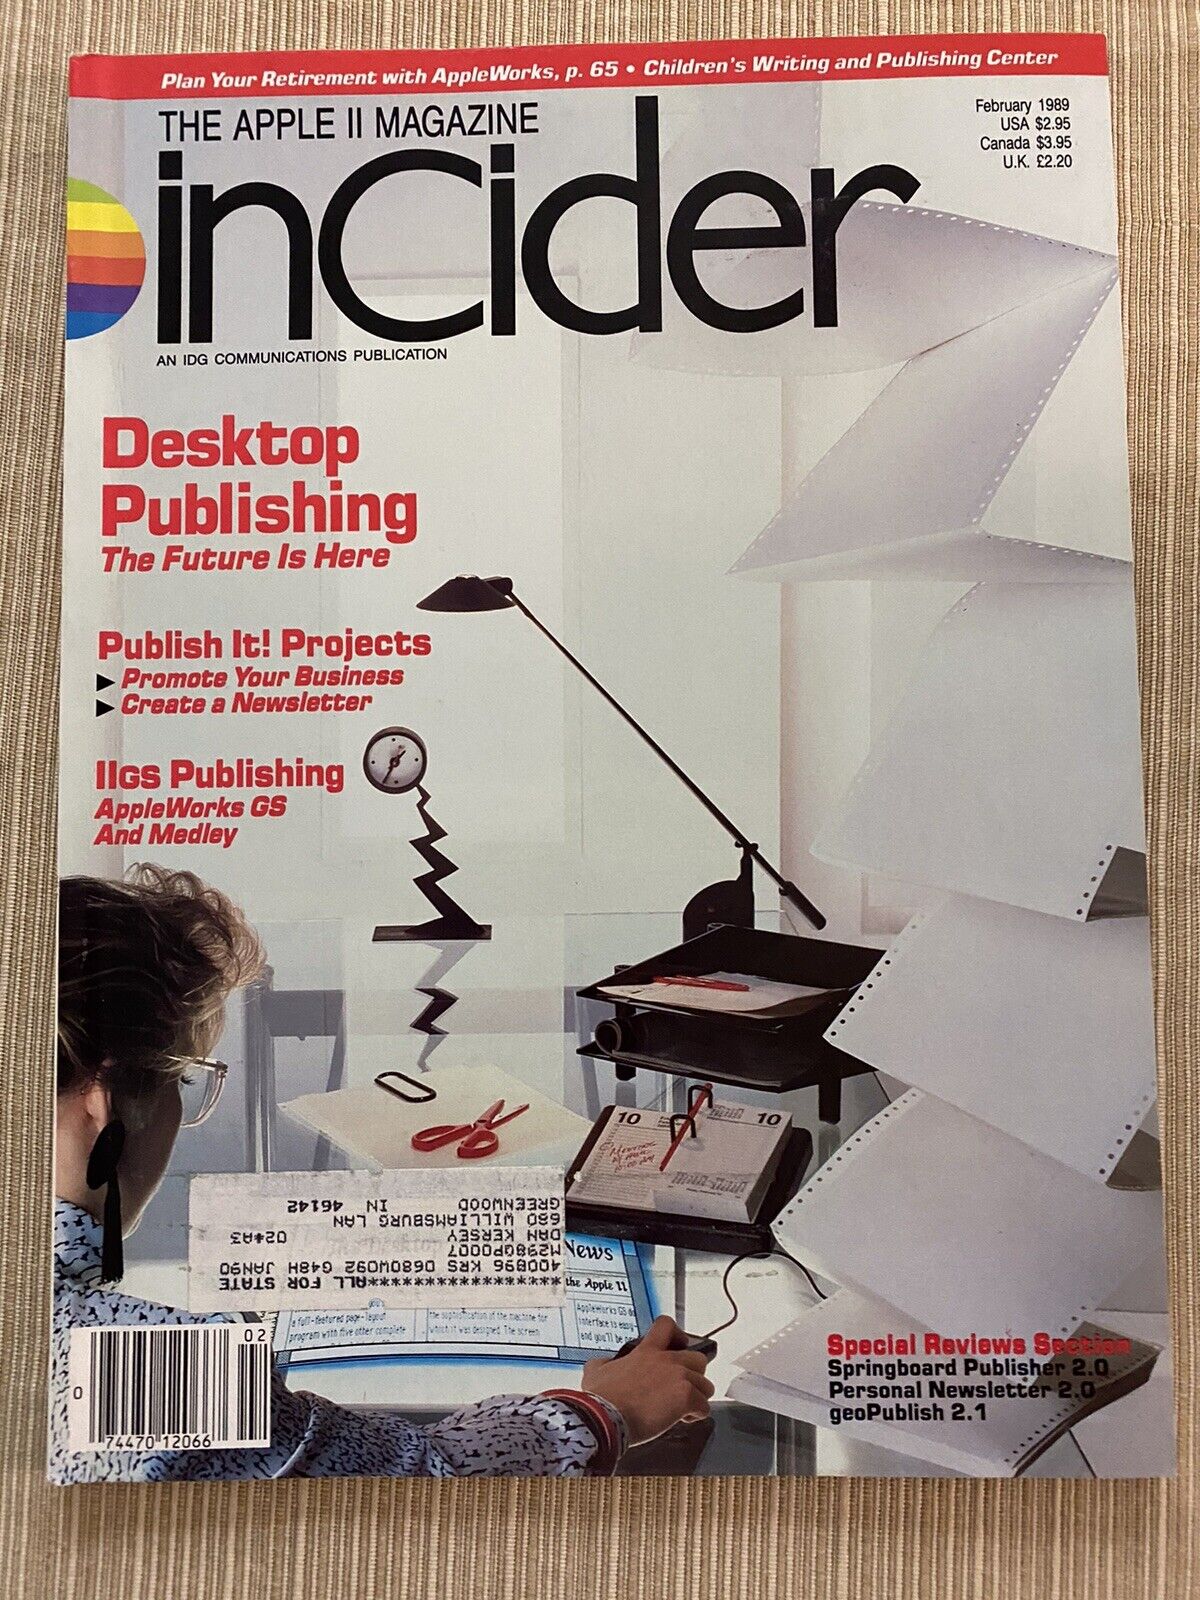 inCider Magazine, February 1989 for Apple II II+ IIe IIc IIgs